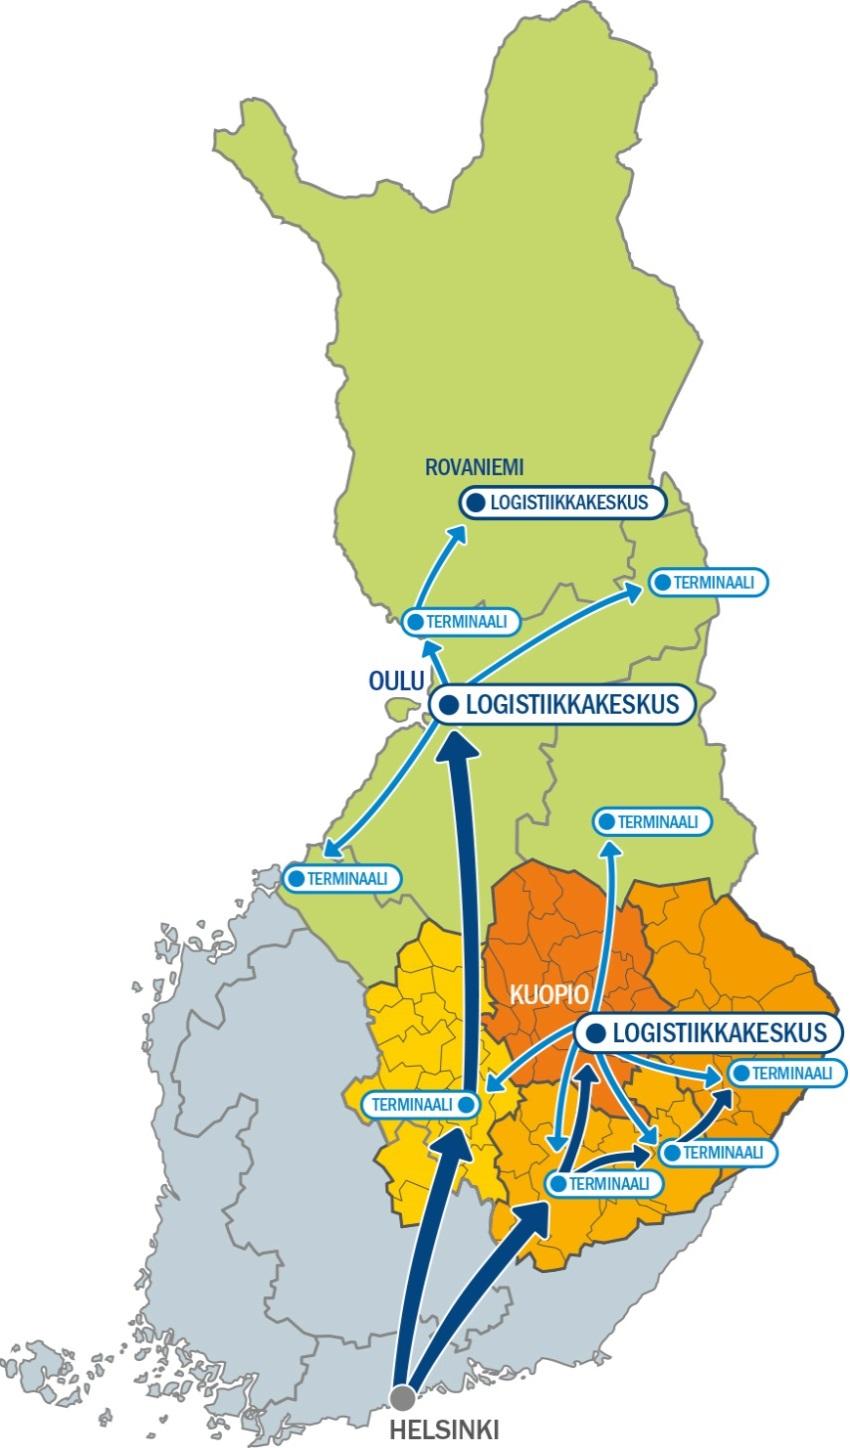 Tulevaisuuden näkymät ja Maakuntien yhteistyö Logistinen malli Itä- ja Pohjois-Suomeen Koko alue käyttää samaa materiaalijärjestelmää ja tekee materiaalihankinnat yhdessä PPSHP kilpailuttanut